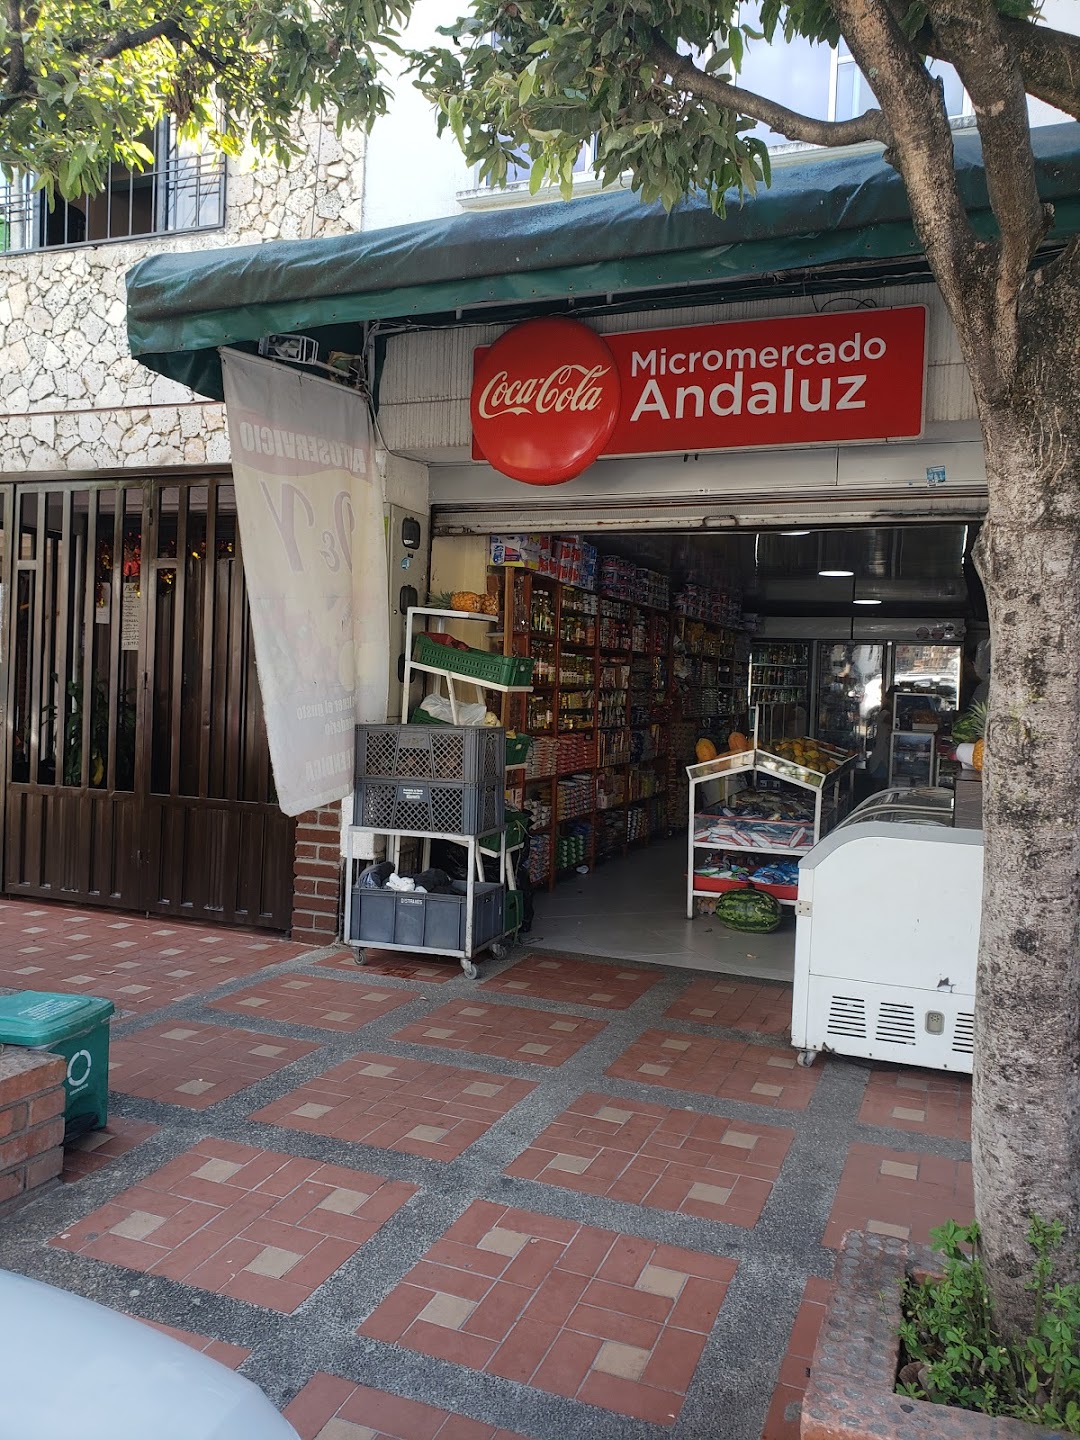 Micromercado Andaluz